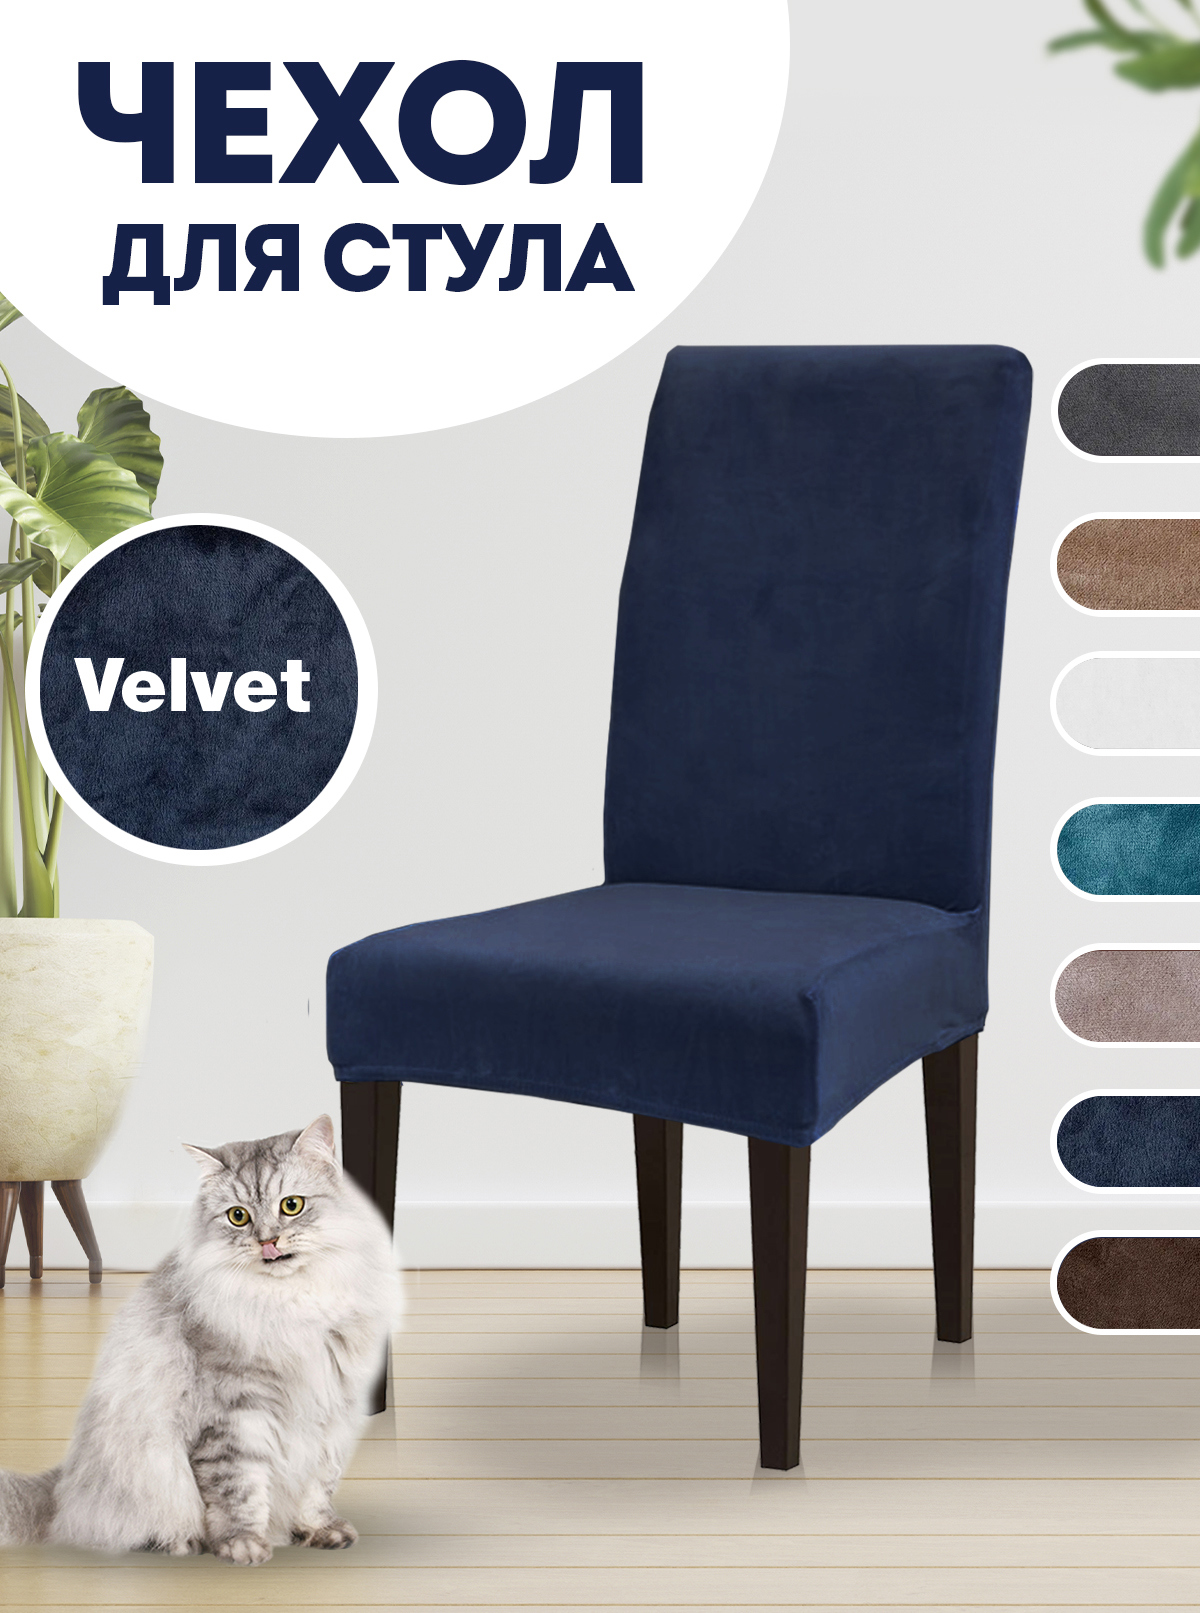 Купить Чехлы для мебели с доставкой в Казахстане - интернет магазин, низкие цены